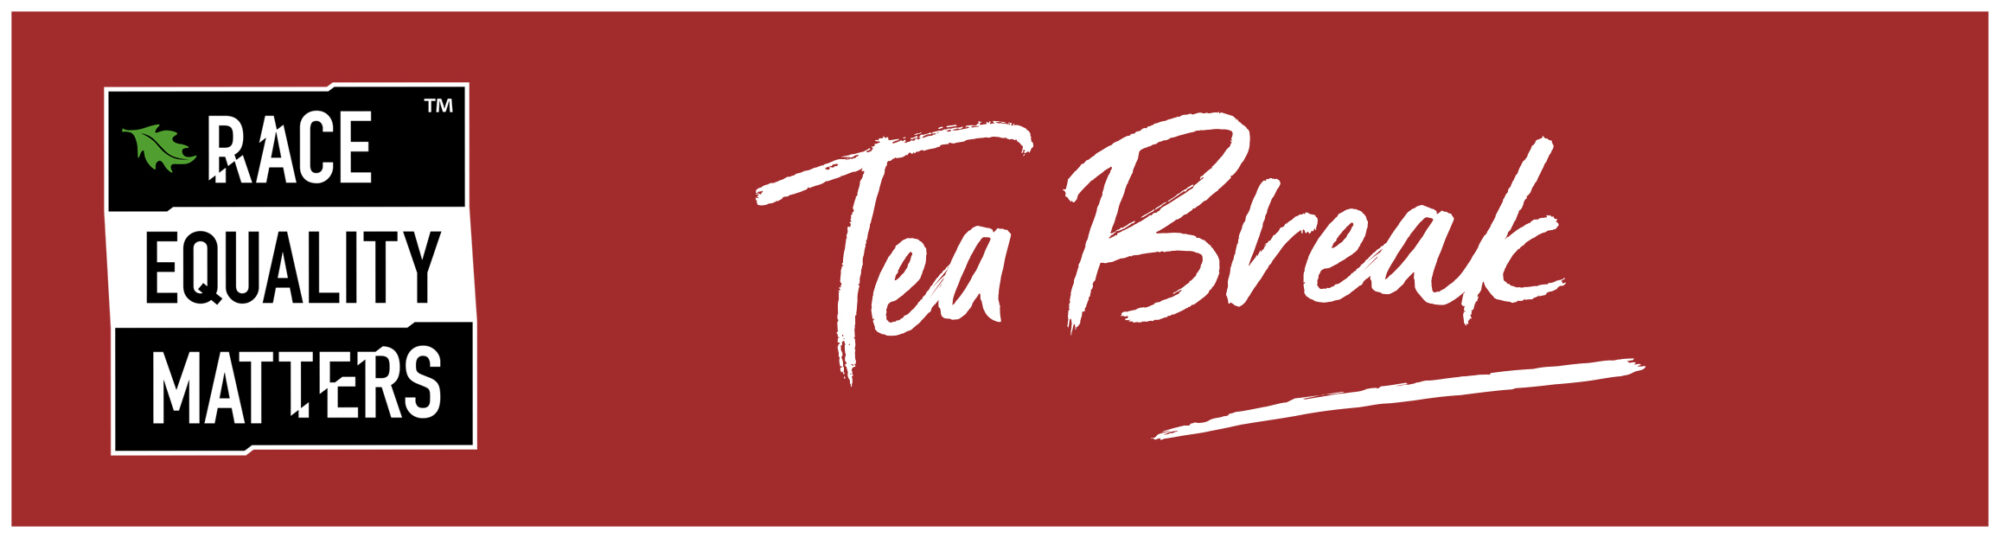 Tea Break logo, white lettering with reddish background